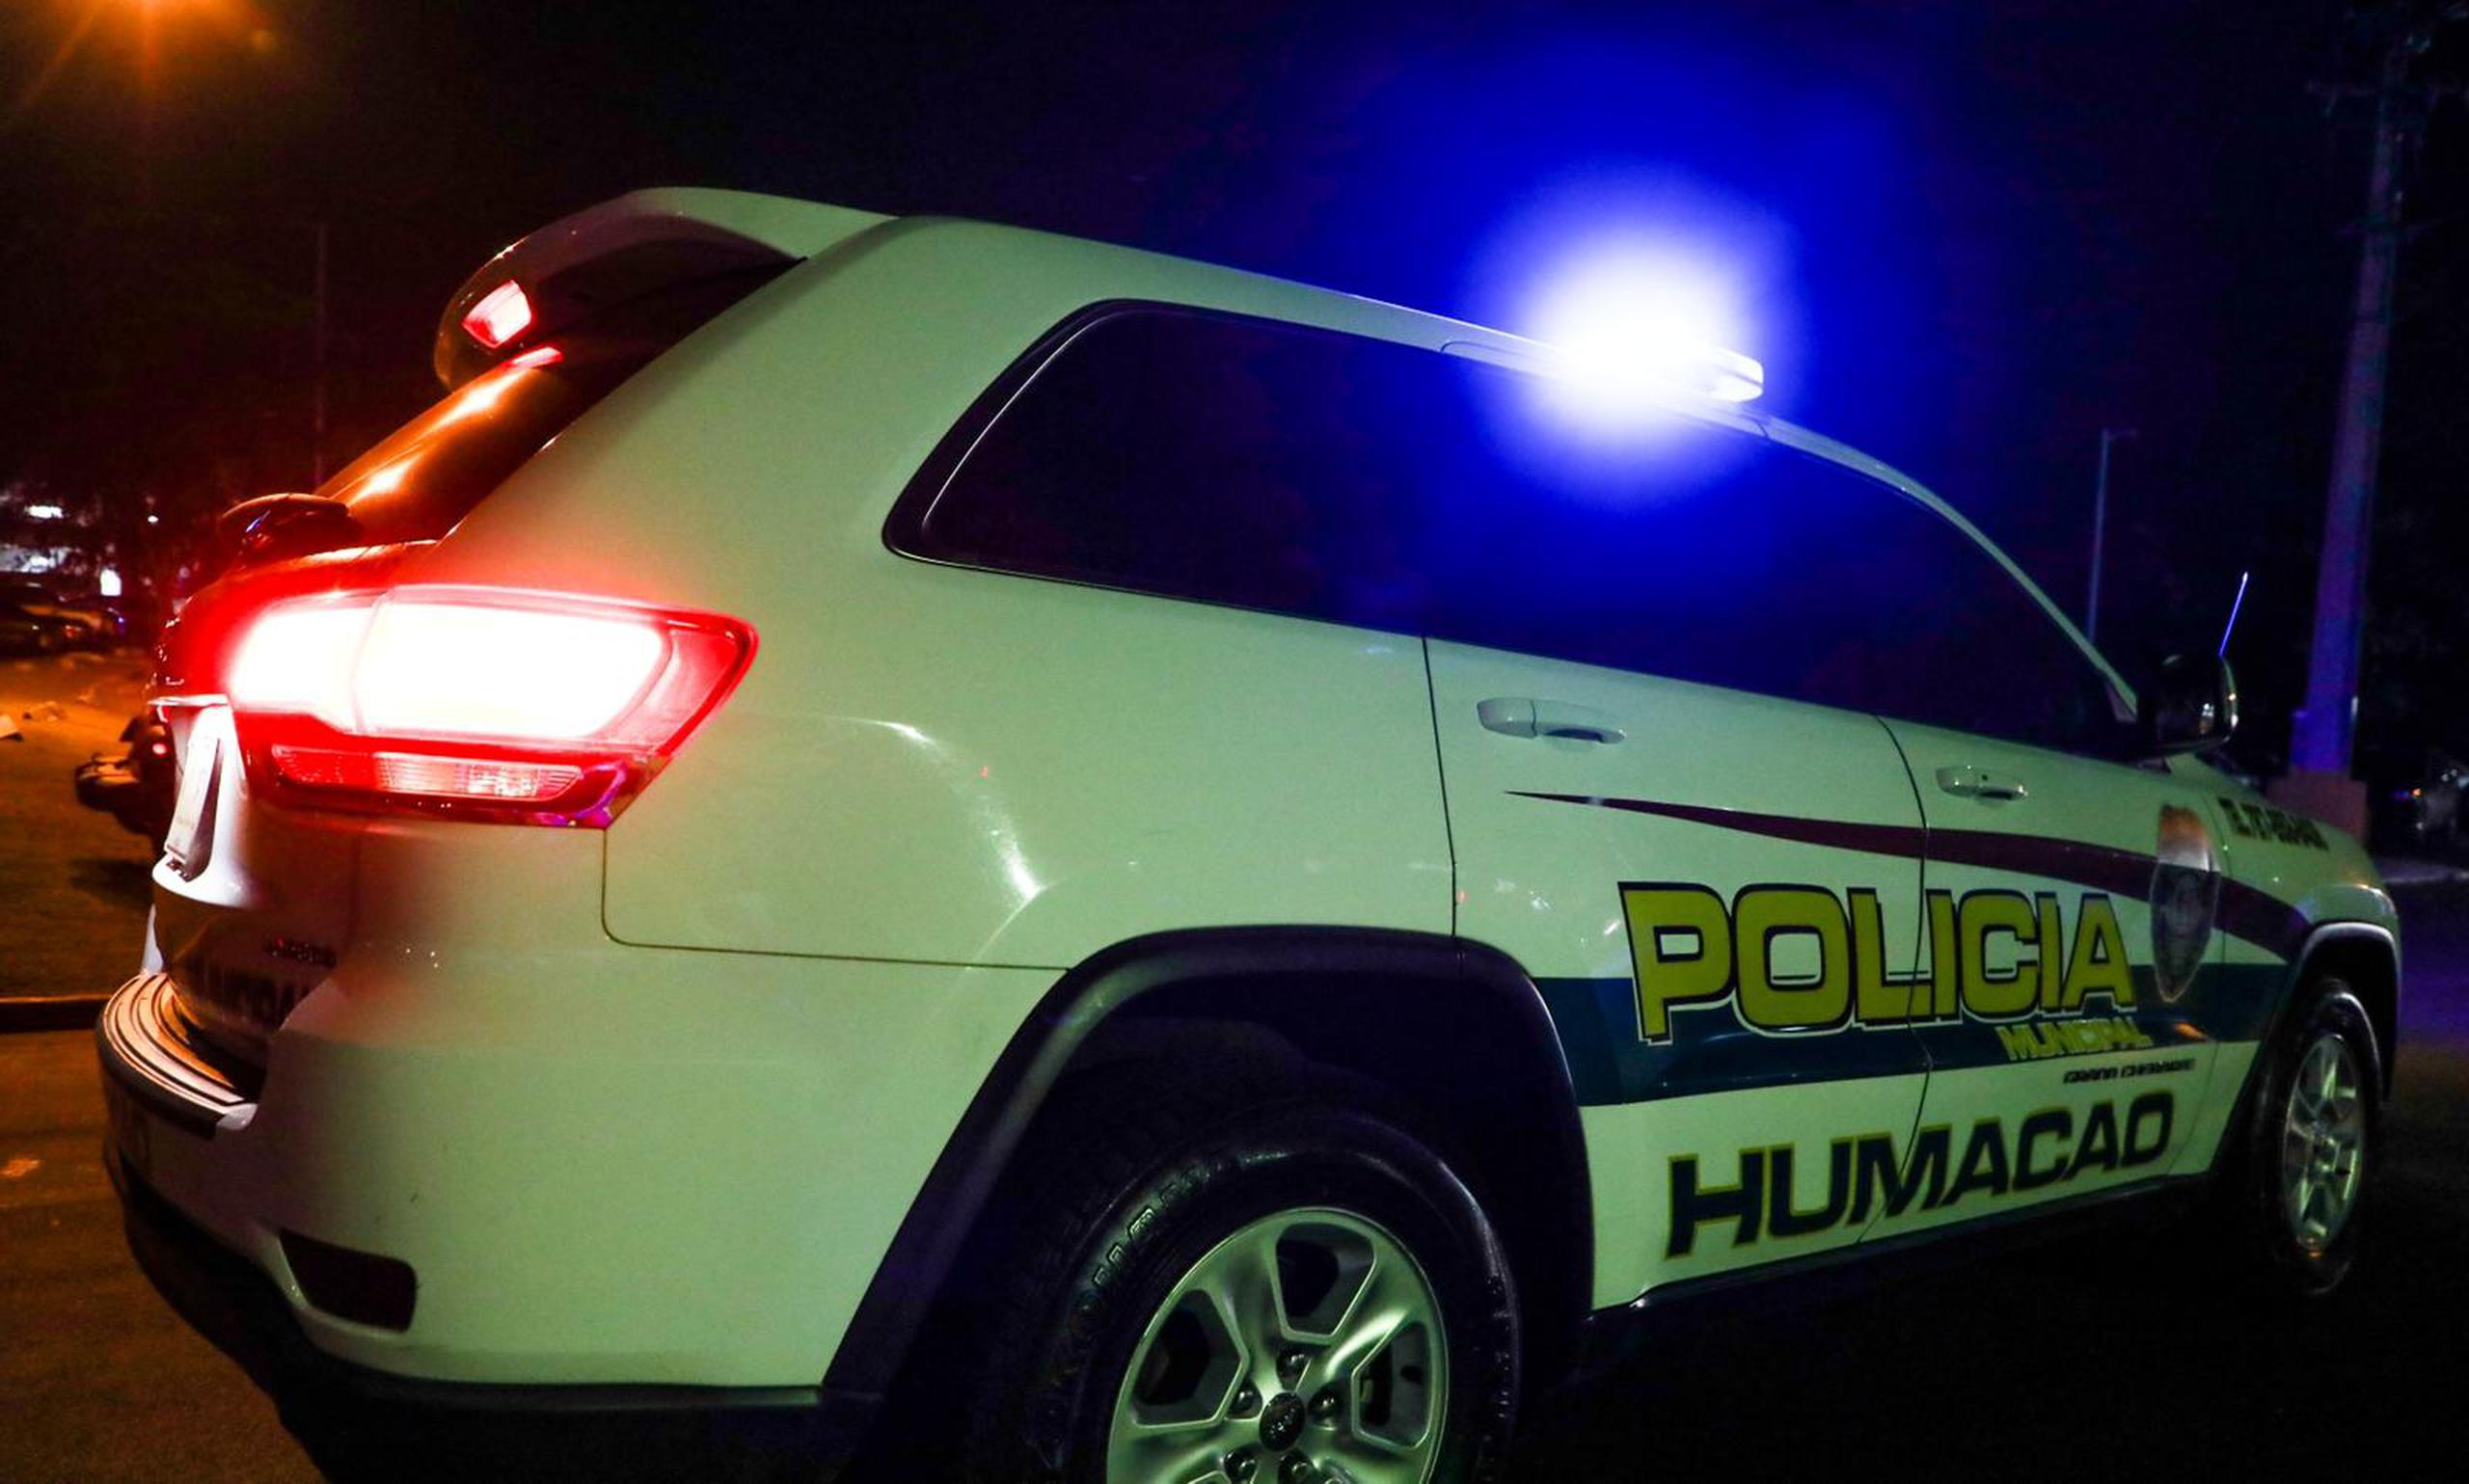 Los agentes de la Policía Municipal de Humacao persiguieron a los sospechosos, que lograron escapar. (Archivo)